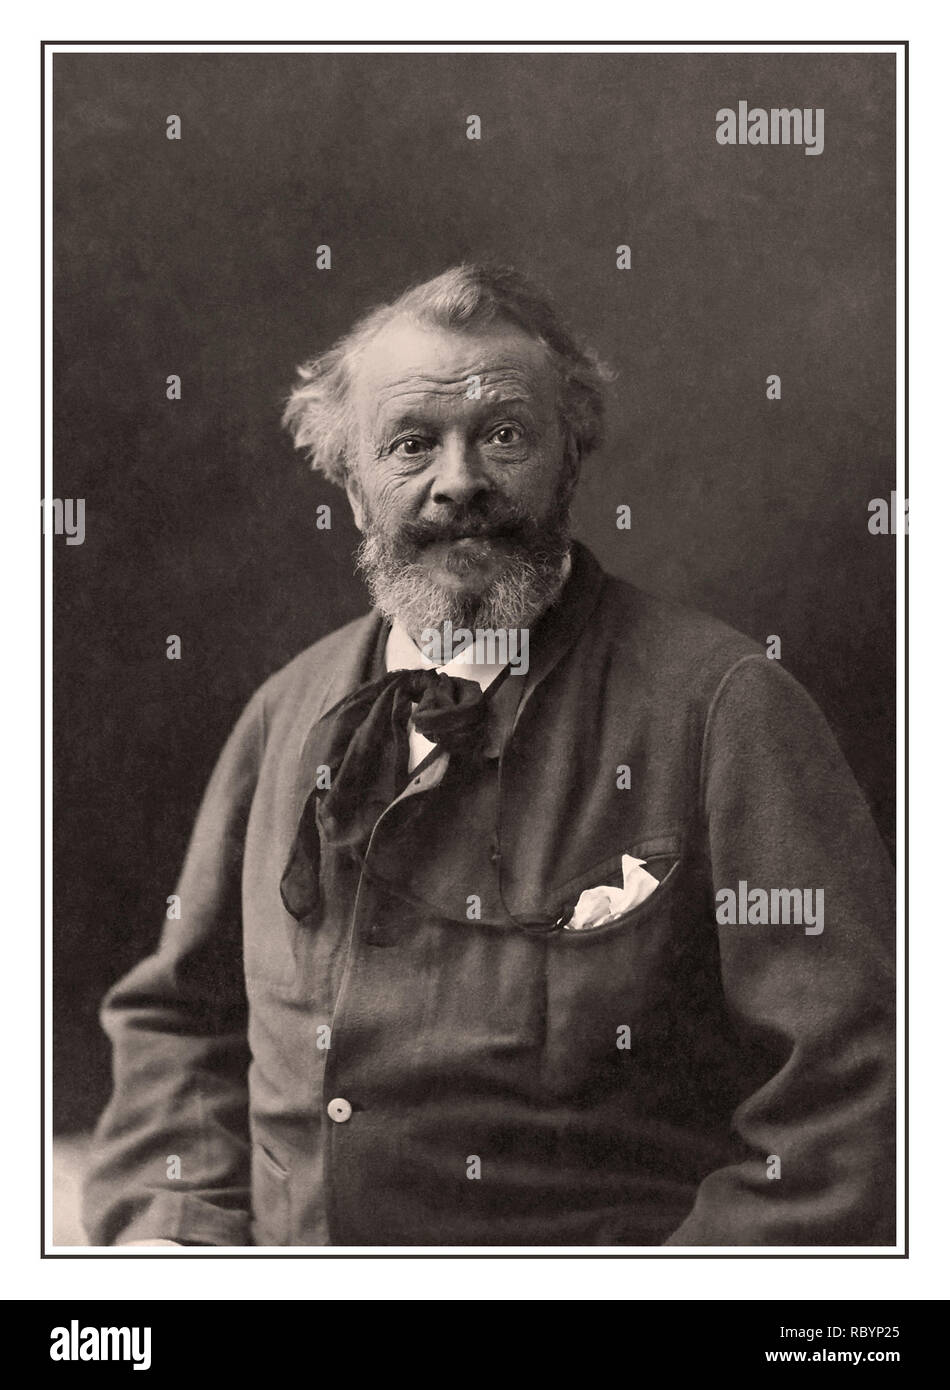 NADAR FOTOGRAF FRANKREICH STUDIO PORTRAIT Gaspard-Félix Tournachon (6. April 1820 - 20 März 1910, bekannt unter dem Pseudonym Nadar, war ein französischer Fotograf, Karikaturist, Journalist, Schriftsteller, und Ballonfahrer (oder, genauer, Befürworter der bemannte Flug). Beruf Fotograf, Karikaturist, Journalist, Schriftsteller, Ballonfahrer, für, ein Pionier in der Fotografie bekannt Stockfoto